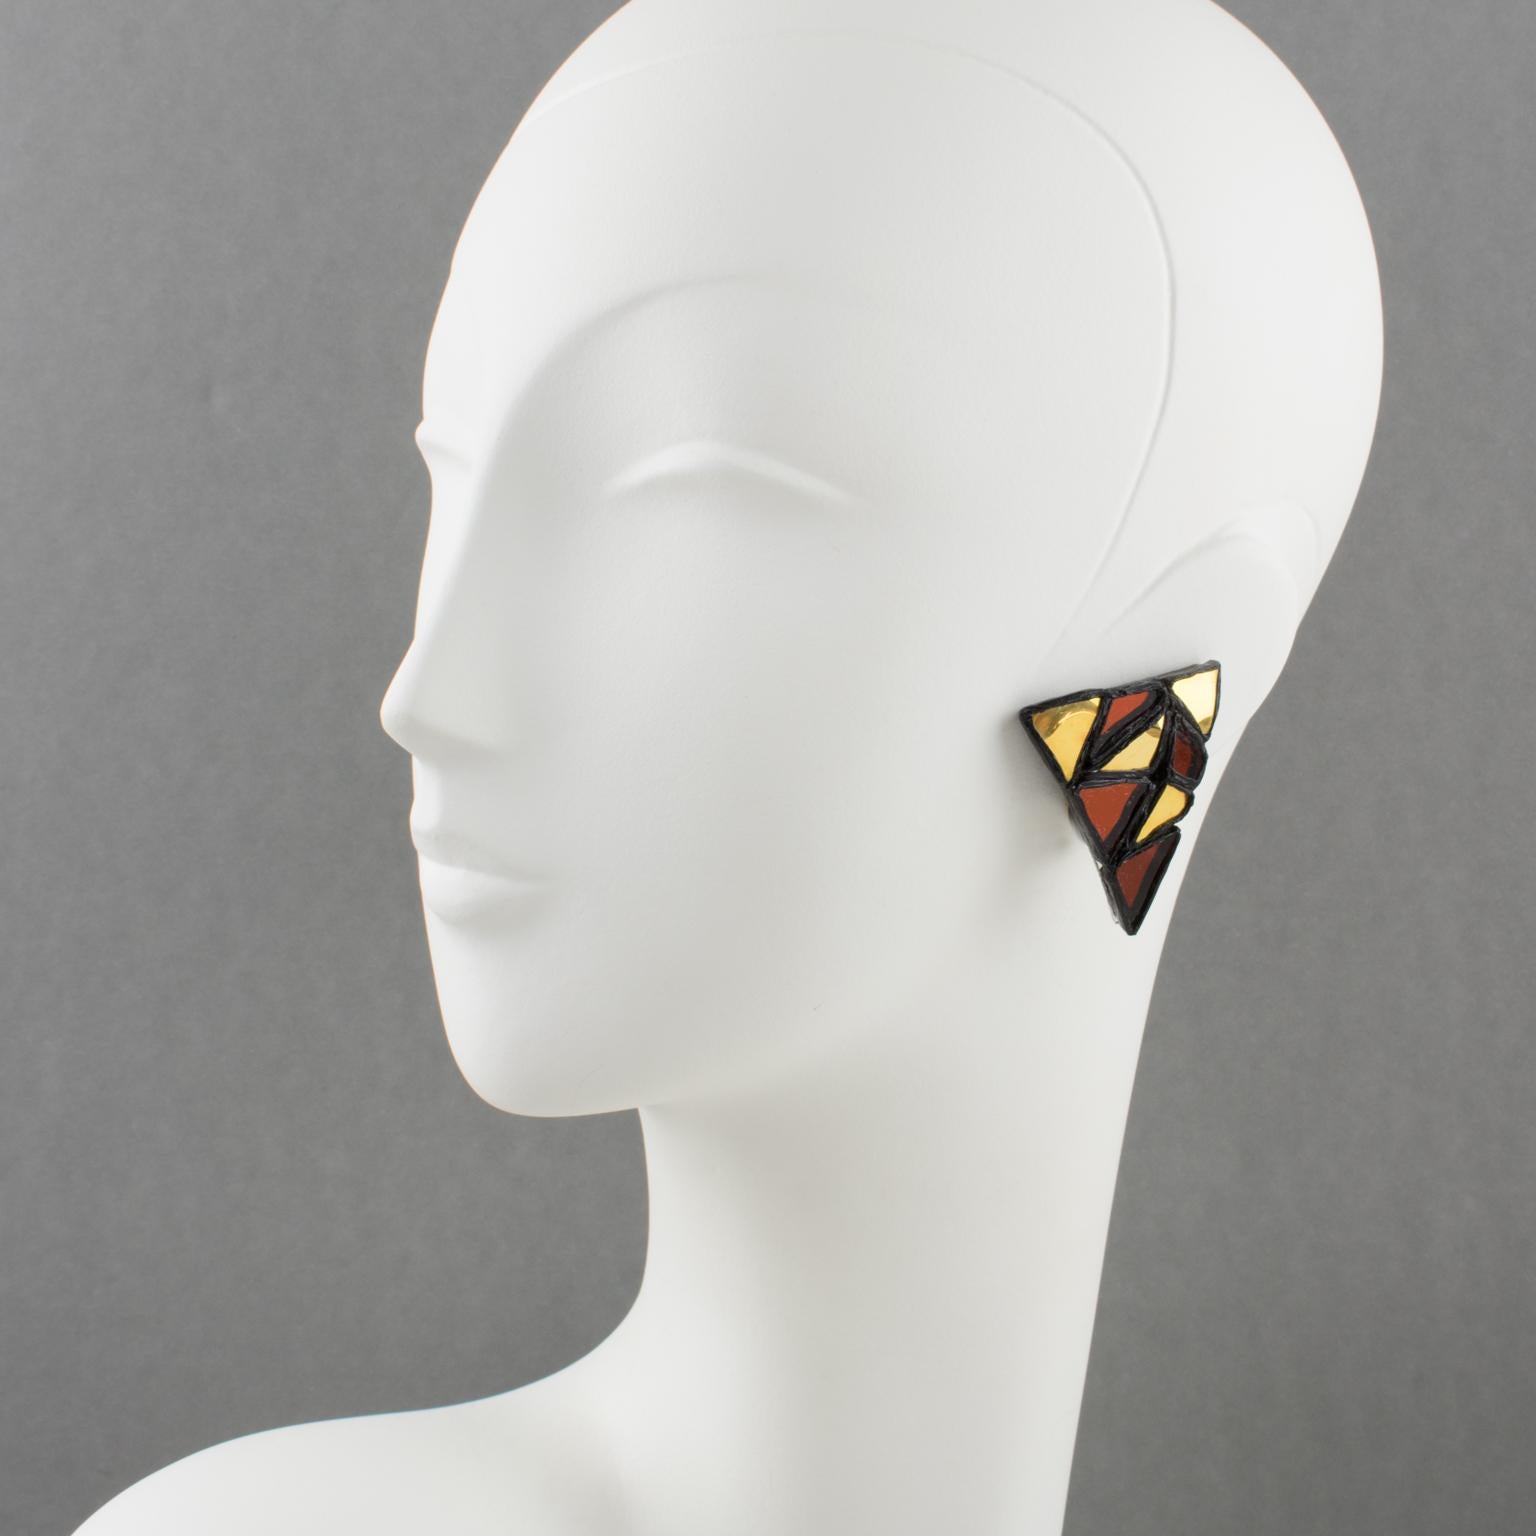 Diese exquisiten Irena Jaworska-Ohrringe aus Talosel oder Kunstharz haben eine geometrische Dreiecksform in schwarzem Kunstharz, die von einem Spiegelmosaik in Gold- und Rostfarben gekrönt wird. Irena Jaworska ist eine der Schülerinnen der Line